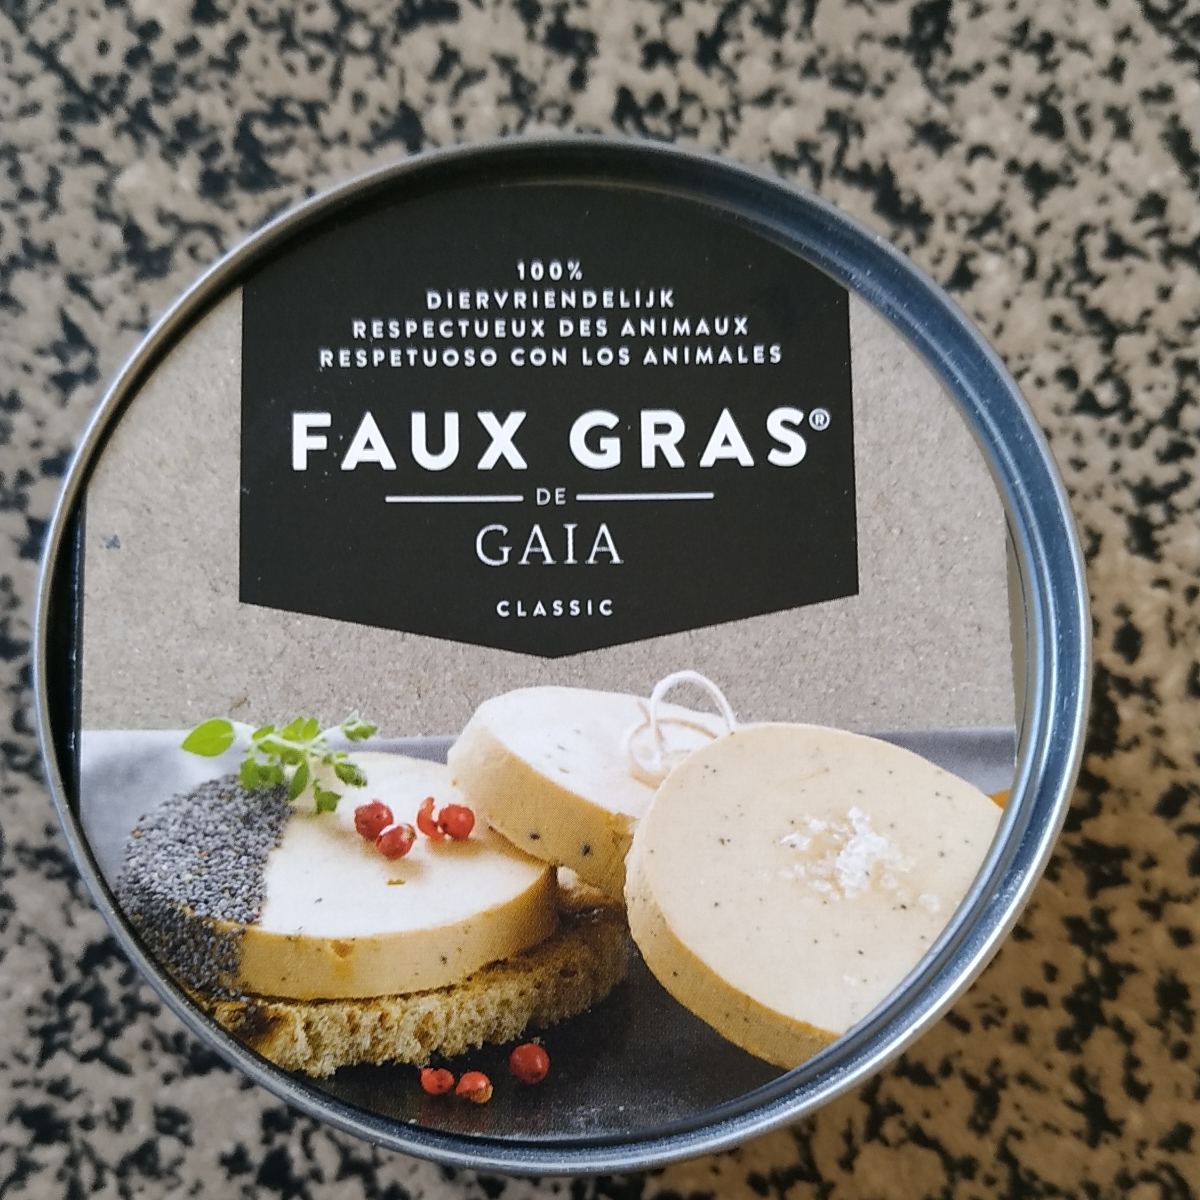 Gaia Faux gras classic Review